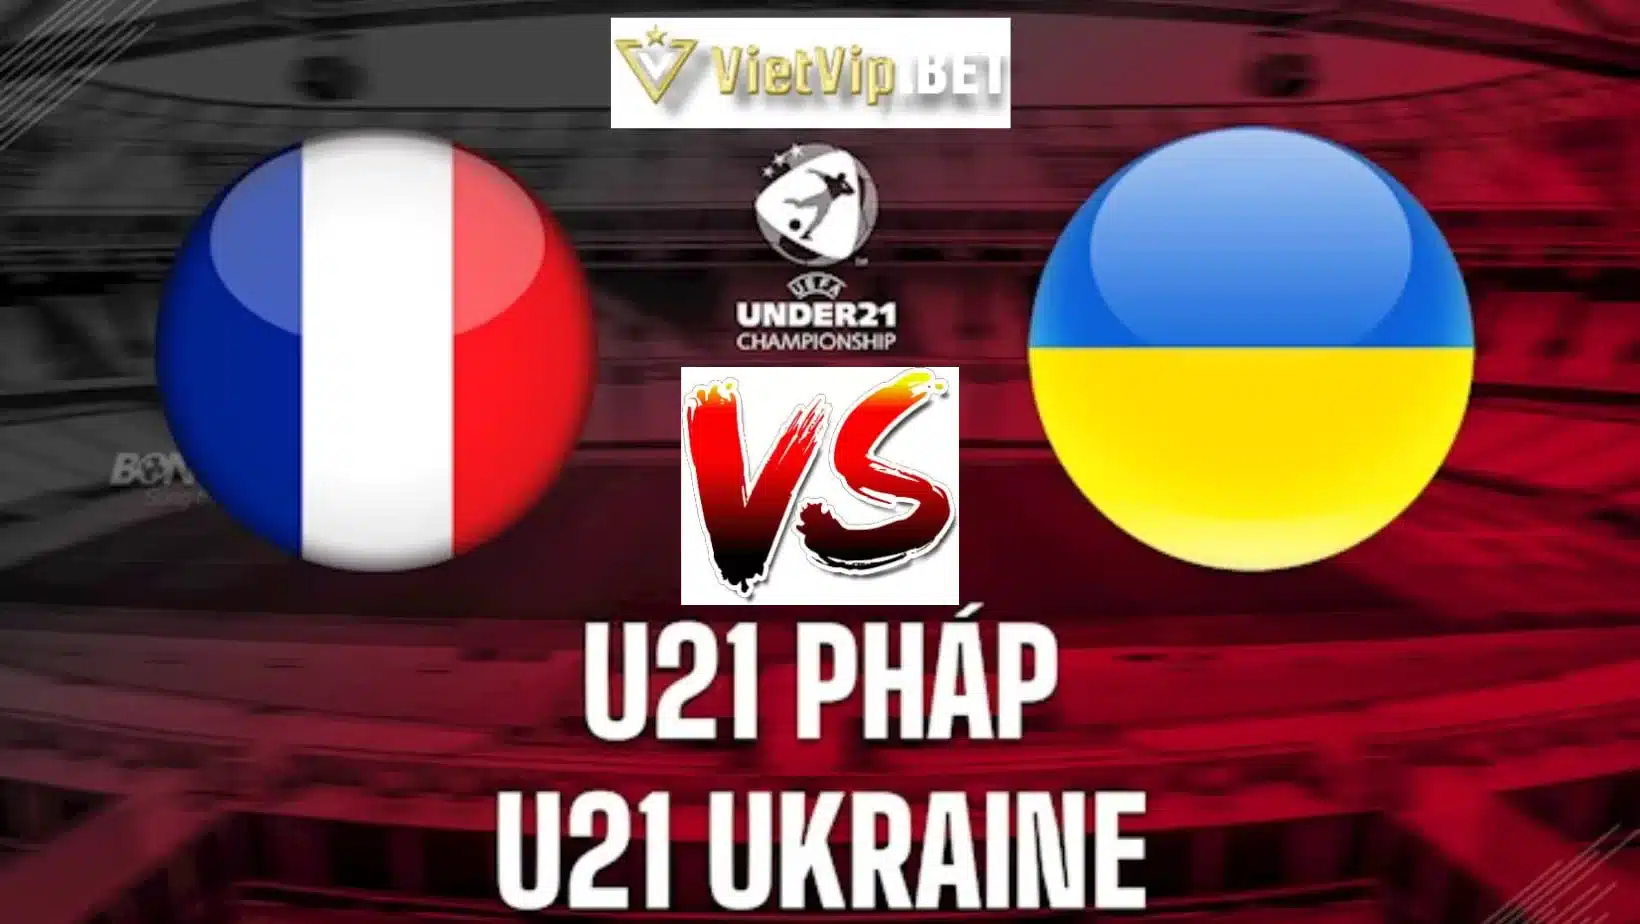 Soi kèo U21 Pháp vs U21 Ukraine 3/7/2023 khuôn khổ vòng tứ kết giải vô địch U21 Châu Âu 2023 trên sân Cluj Arena (Cluj-Napoca, Romania)